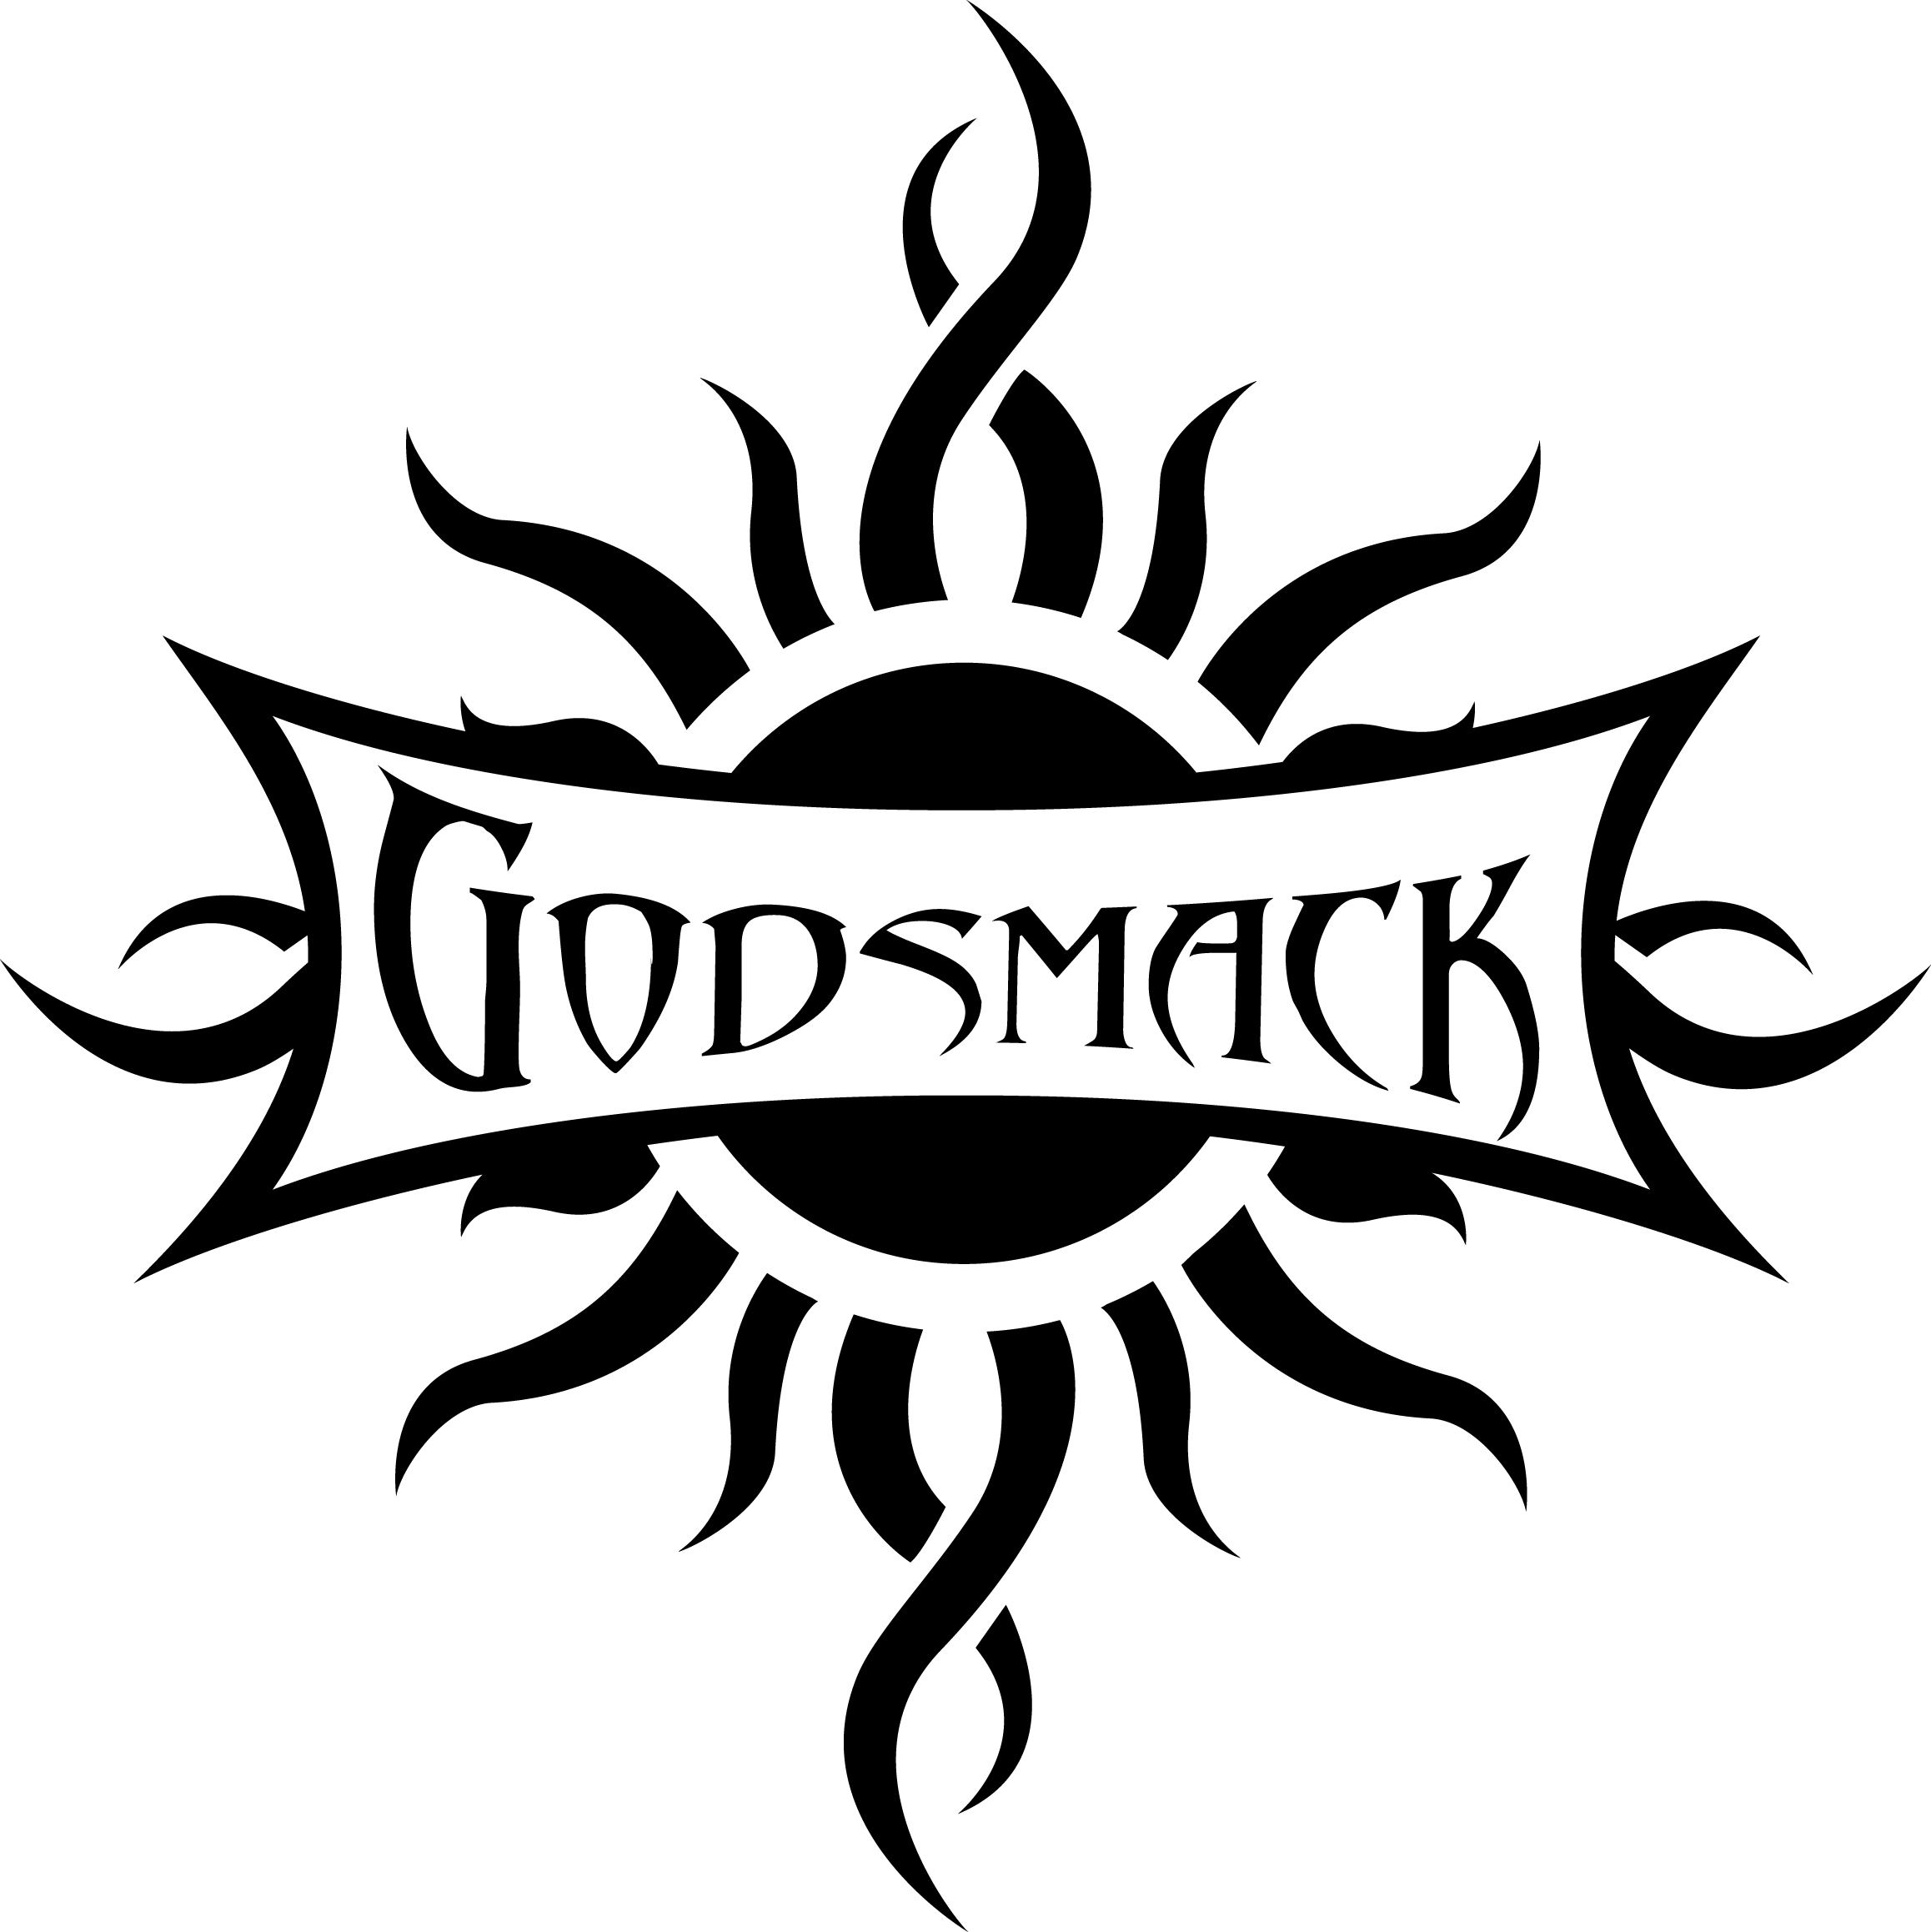 Nice Images Collection: Godsmack Desktop Wallpapers